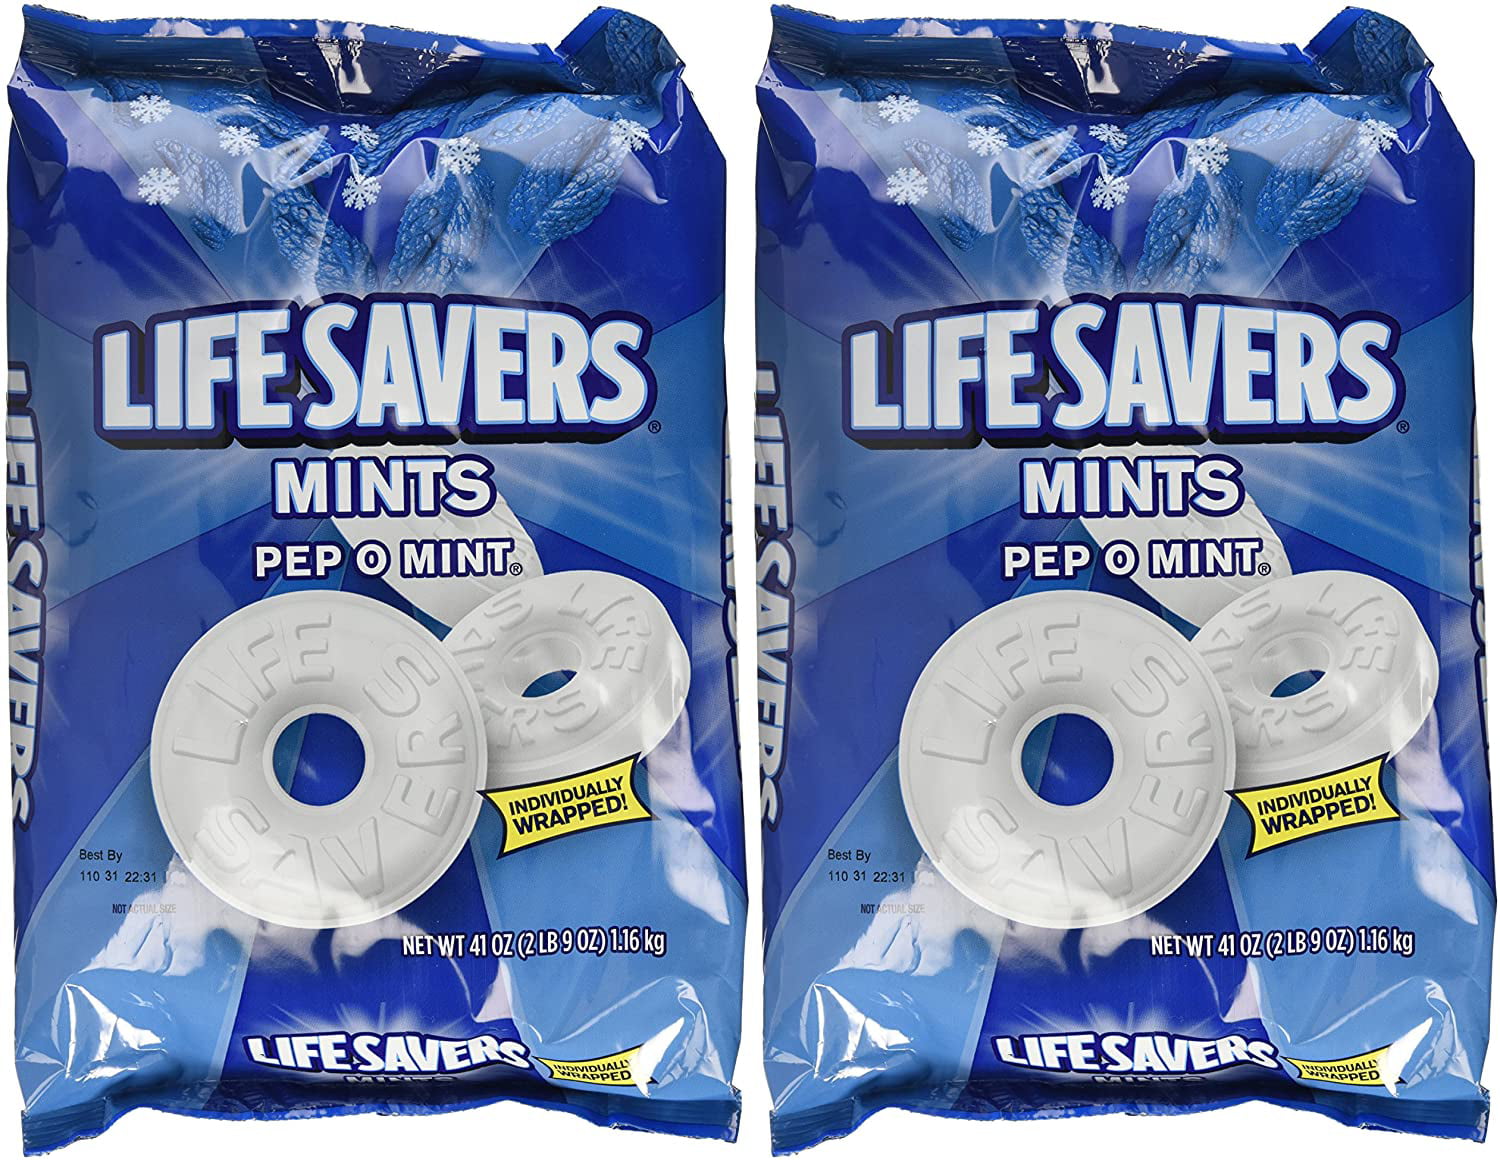 Mint hard. Life Savers Mint. Lifesaver игра. Конфеты Америка Life Savers. Lifesaver 2 фото.